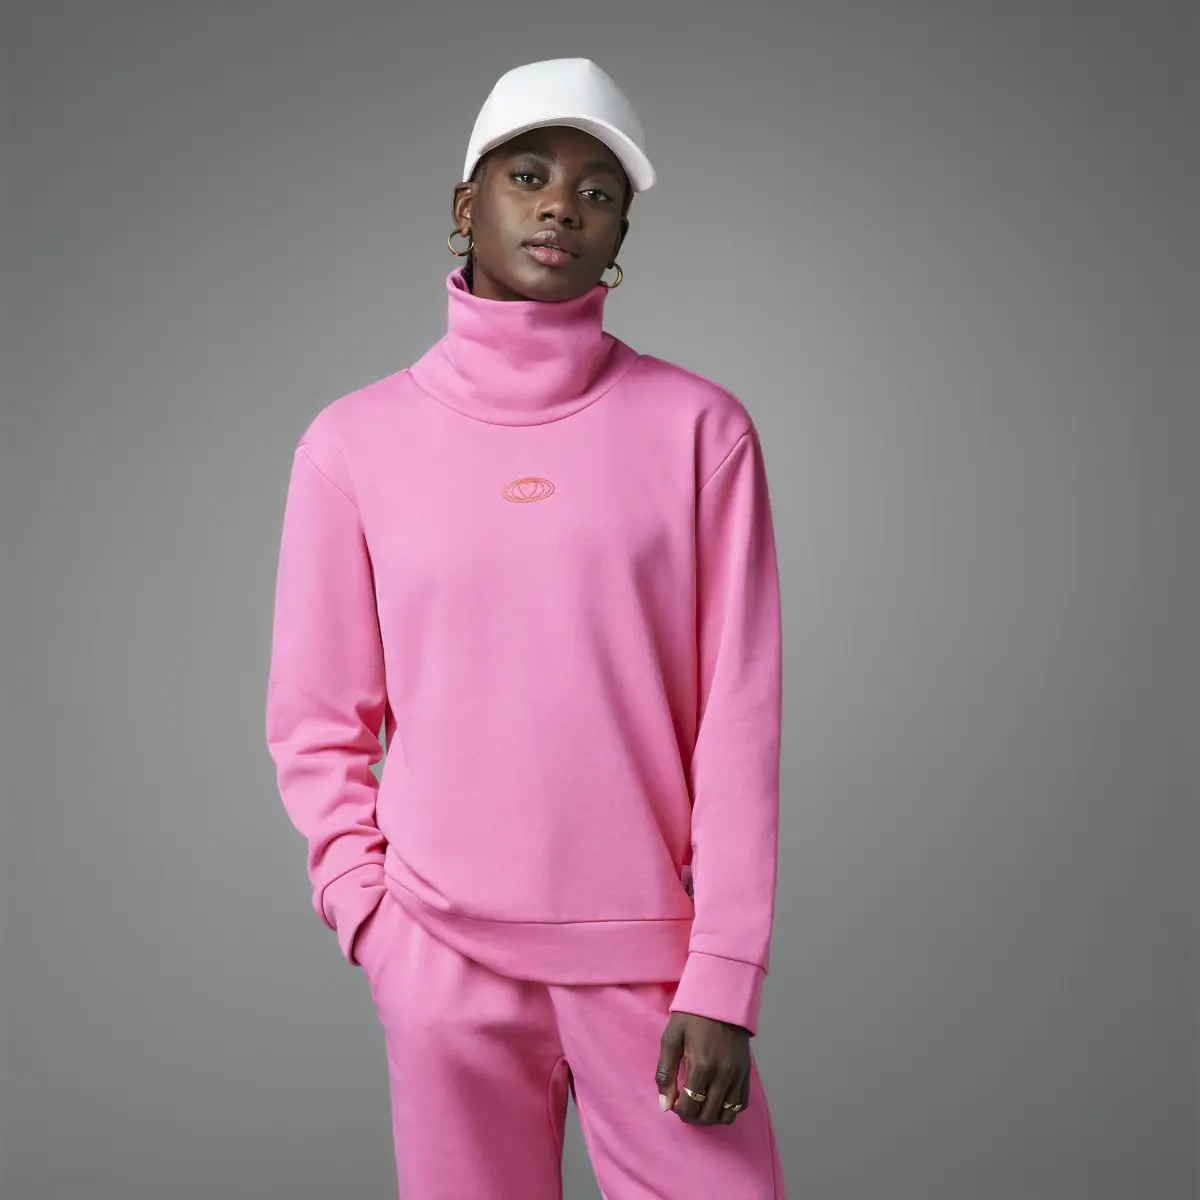 Adidas Valentine’s Day Sweatshirt. 1